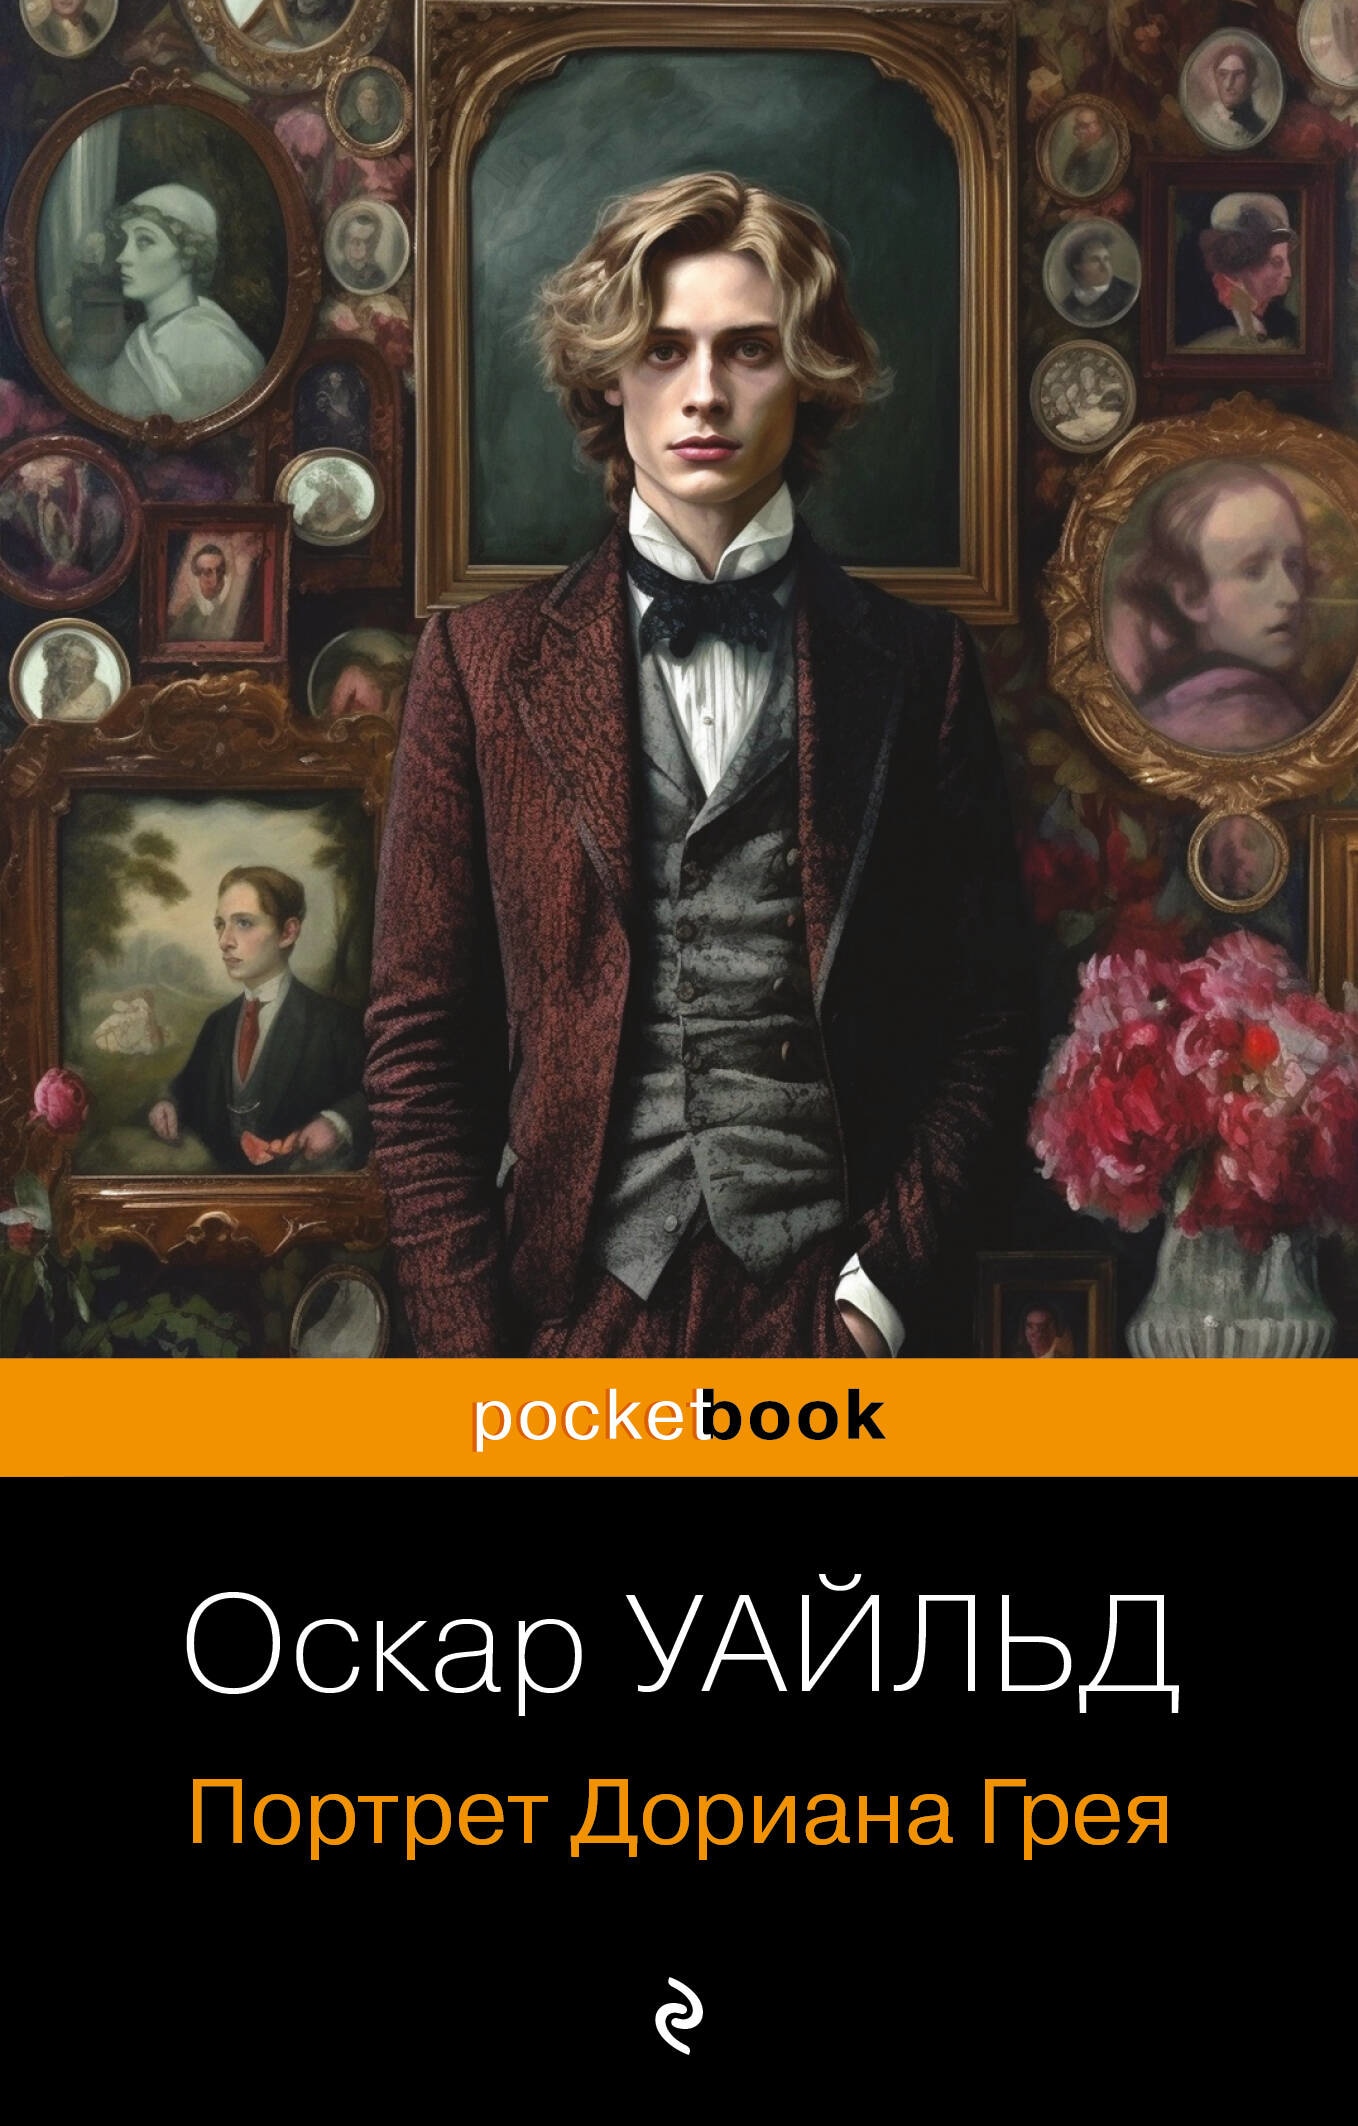 Книга «Портрет Дориана Грея» Оскар Уайльд — 2023 г.